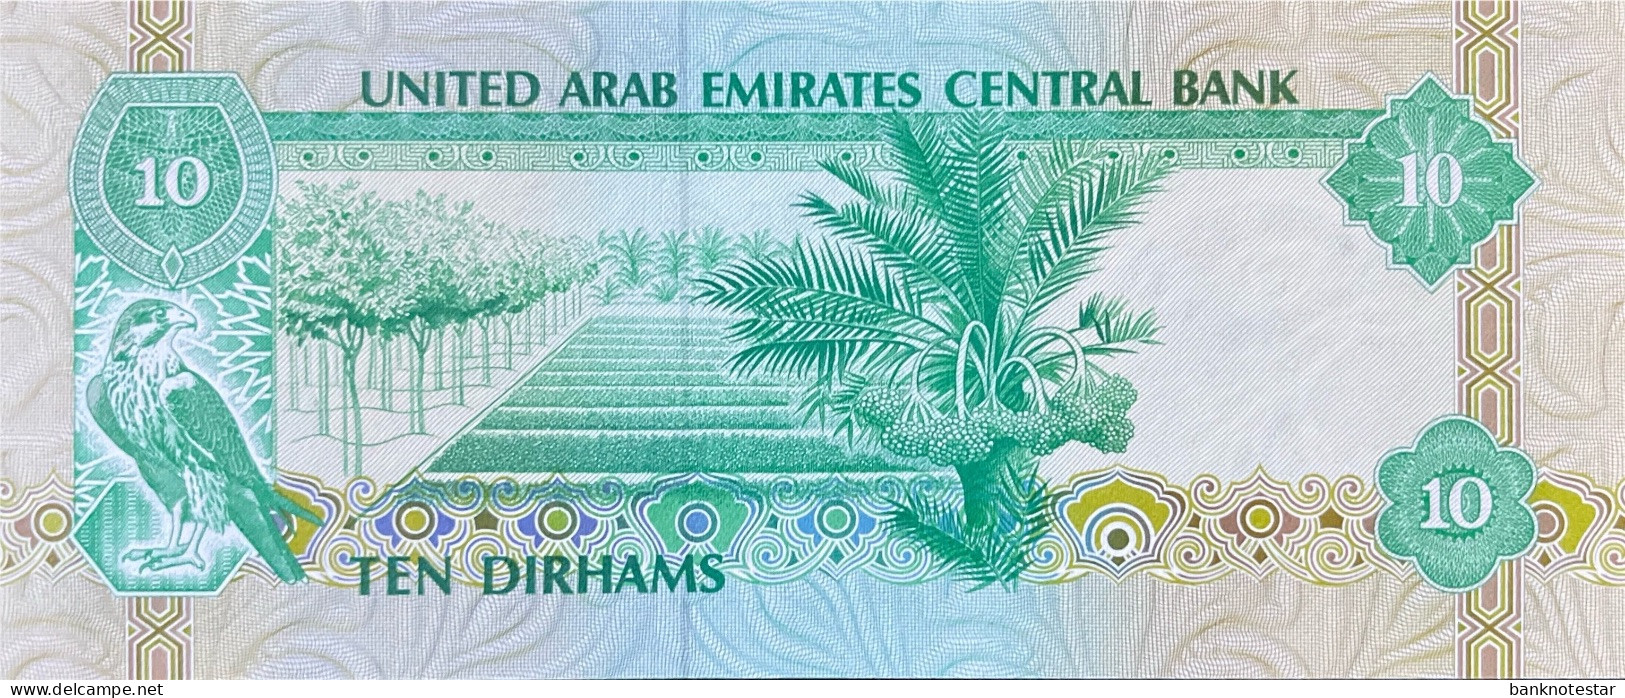 United Arab Emirates 10 Dirhams, P-8 (1982) - UNC - Ver. Arab. Emirate